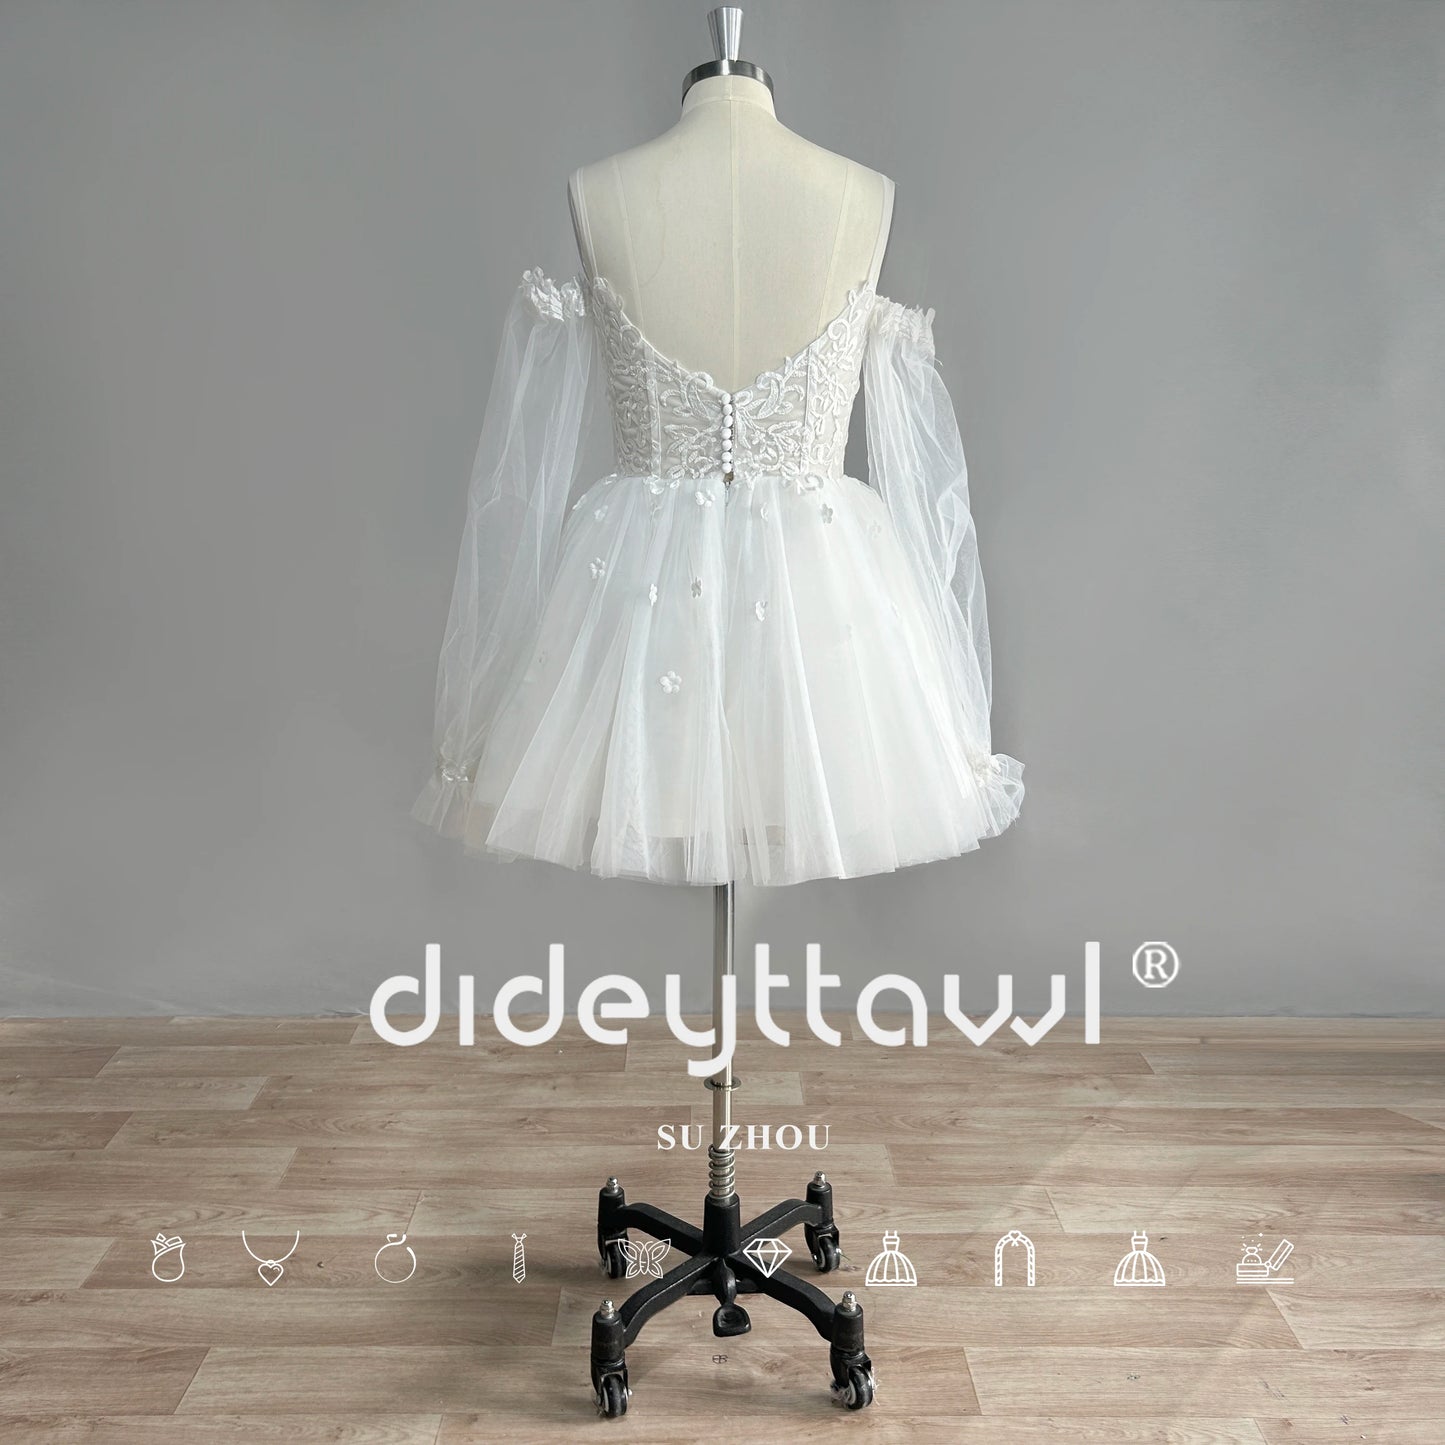 DIDEYTTAWL chérie manches longues Tulle robe de mariée courte Mini longueur épaules dénudées robe de mariée photo réelle